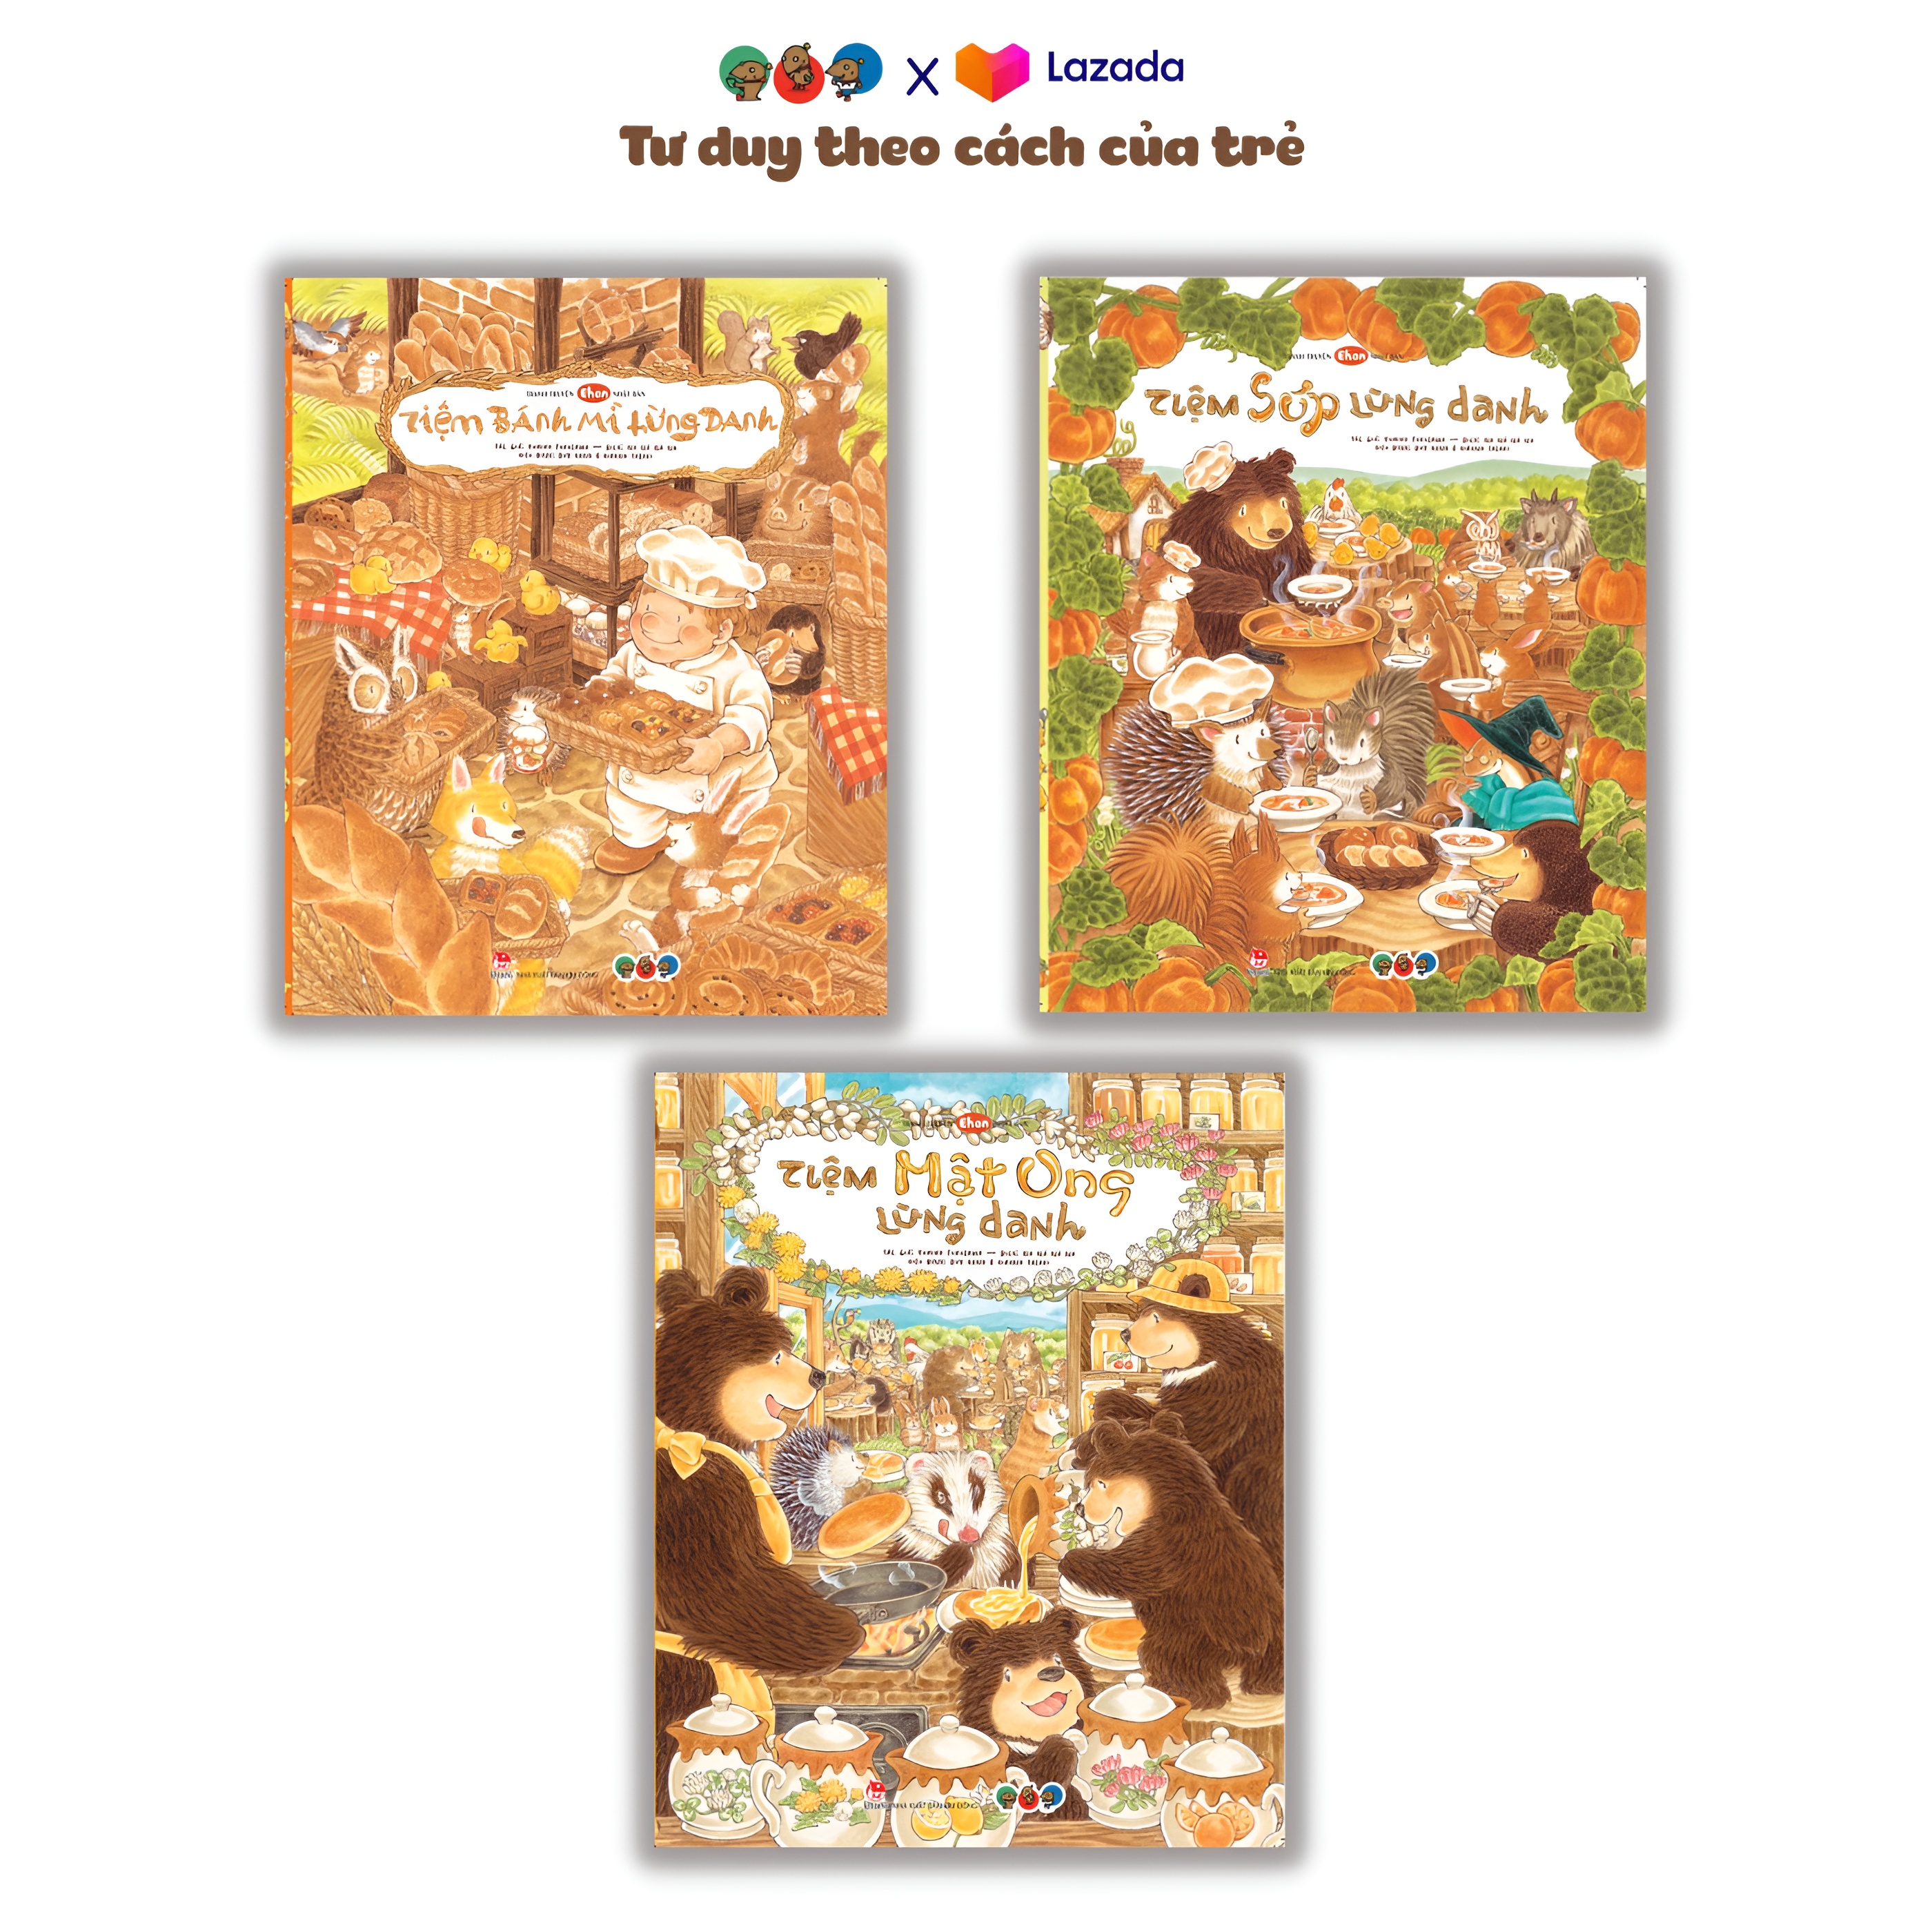 Sách Ehon Phát triển tư duy cho bé 3 6 tuổi - Combo cửa tiệm lừng danh (Tranh truyện ehon Nhật Bản cho bé)